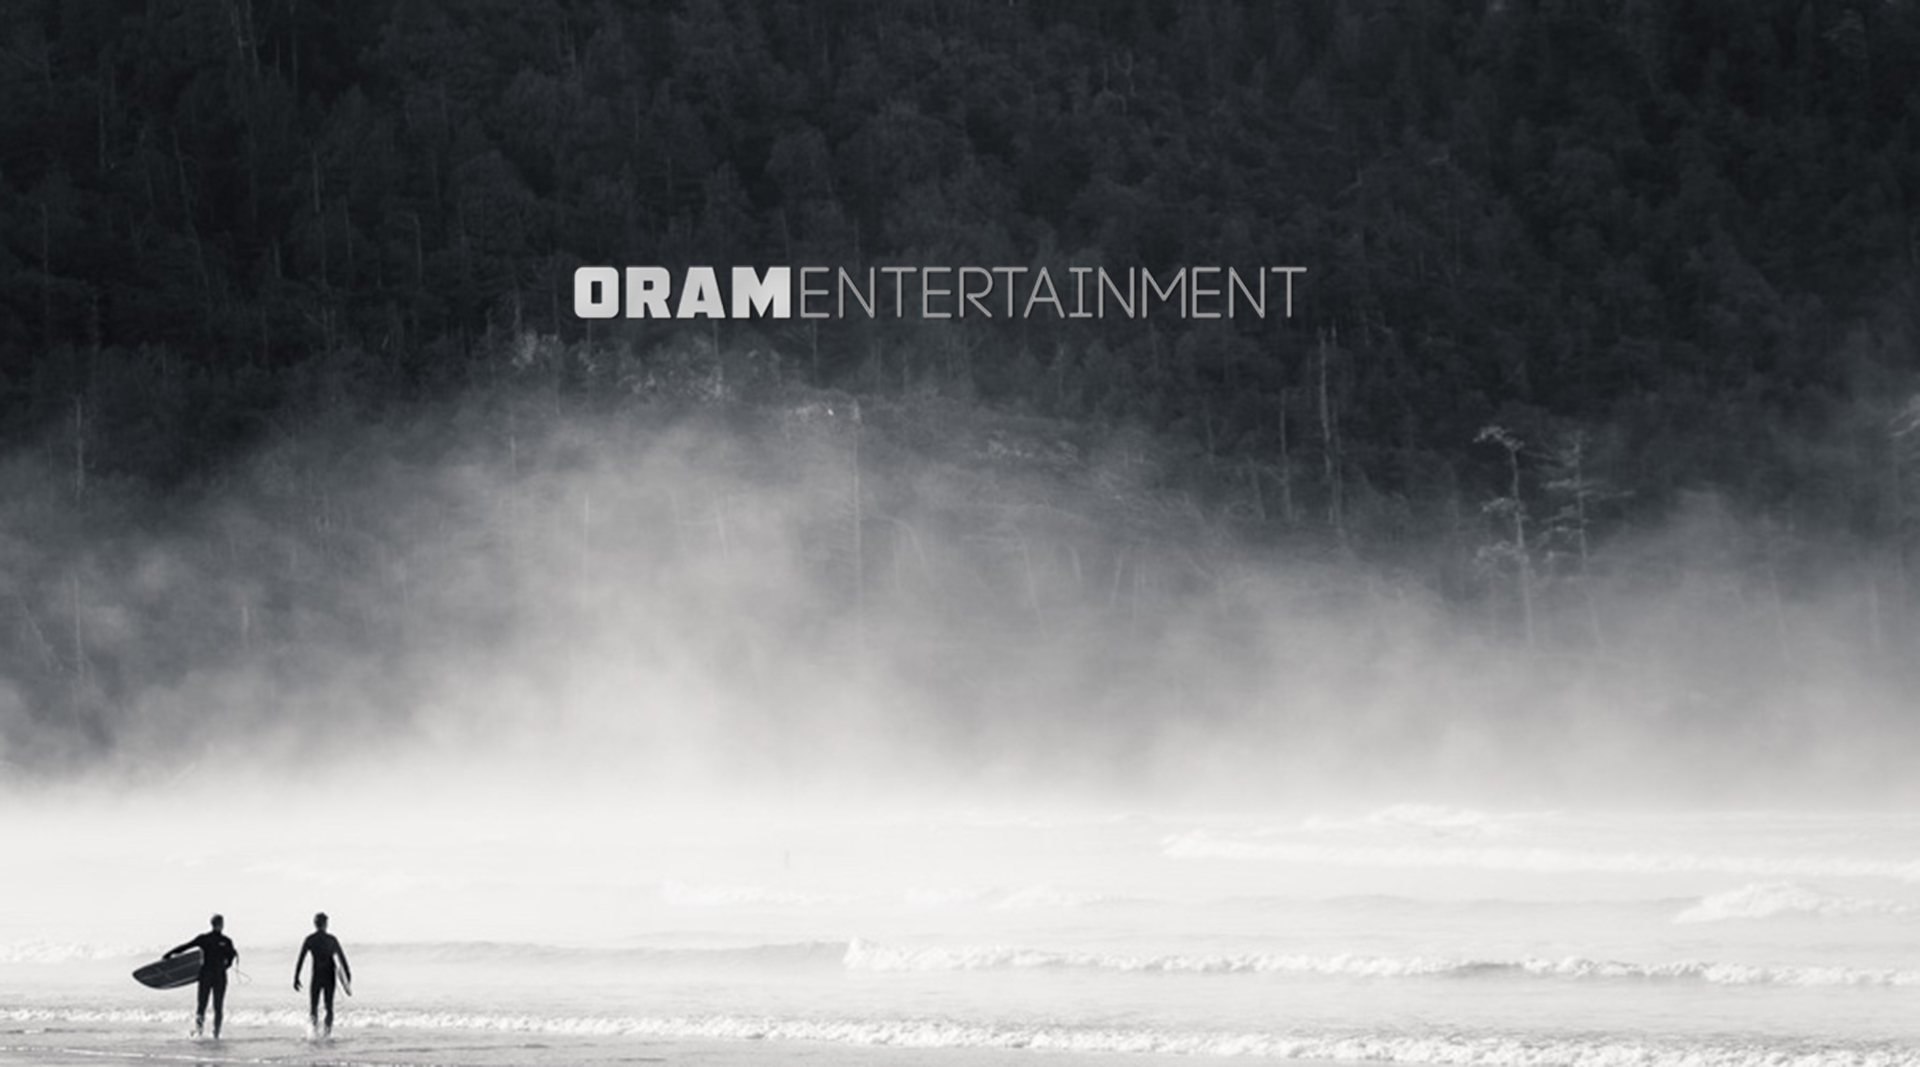 Oram Entertainment